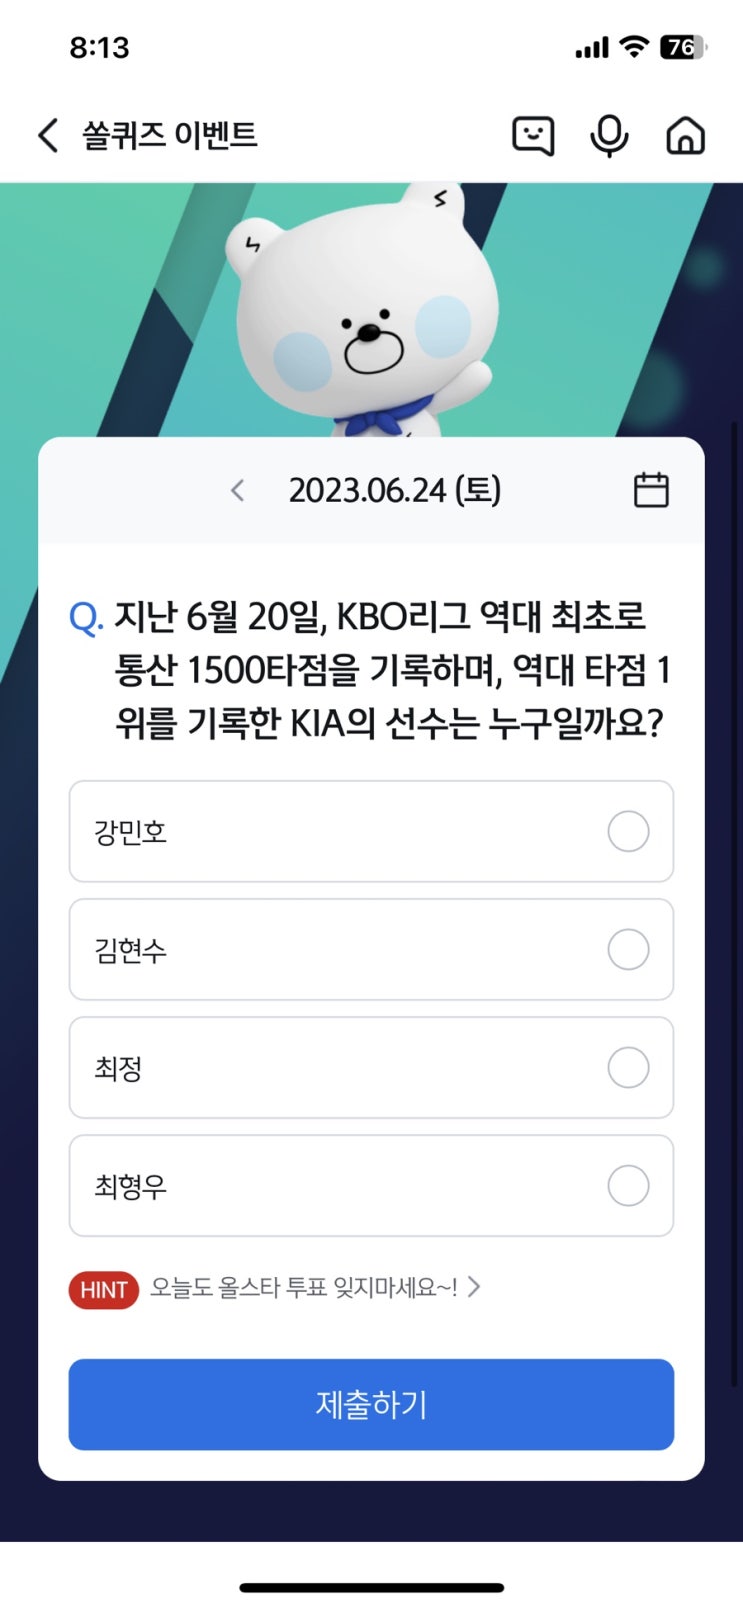 신한 쏠퀴즈(쏠야구) 정답 6월24일 - 지난 6월 20일, KBO리그 역대 최초로 통산 1500타점을 기록하며, 역대 타점 1위를 기록한 KIA의 선수는 누구일까요?